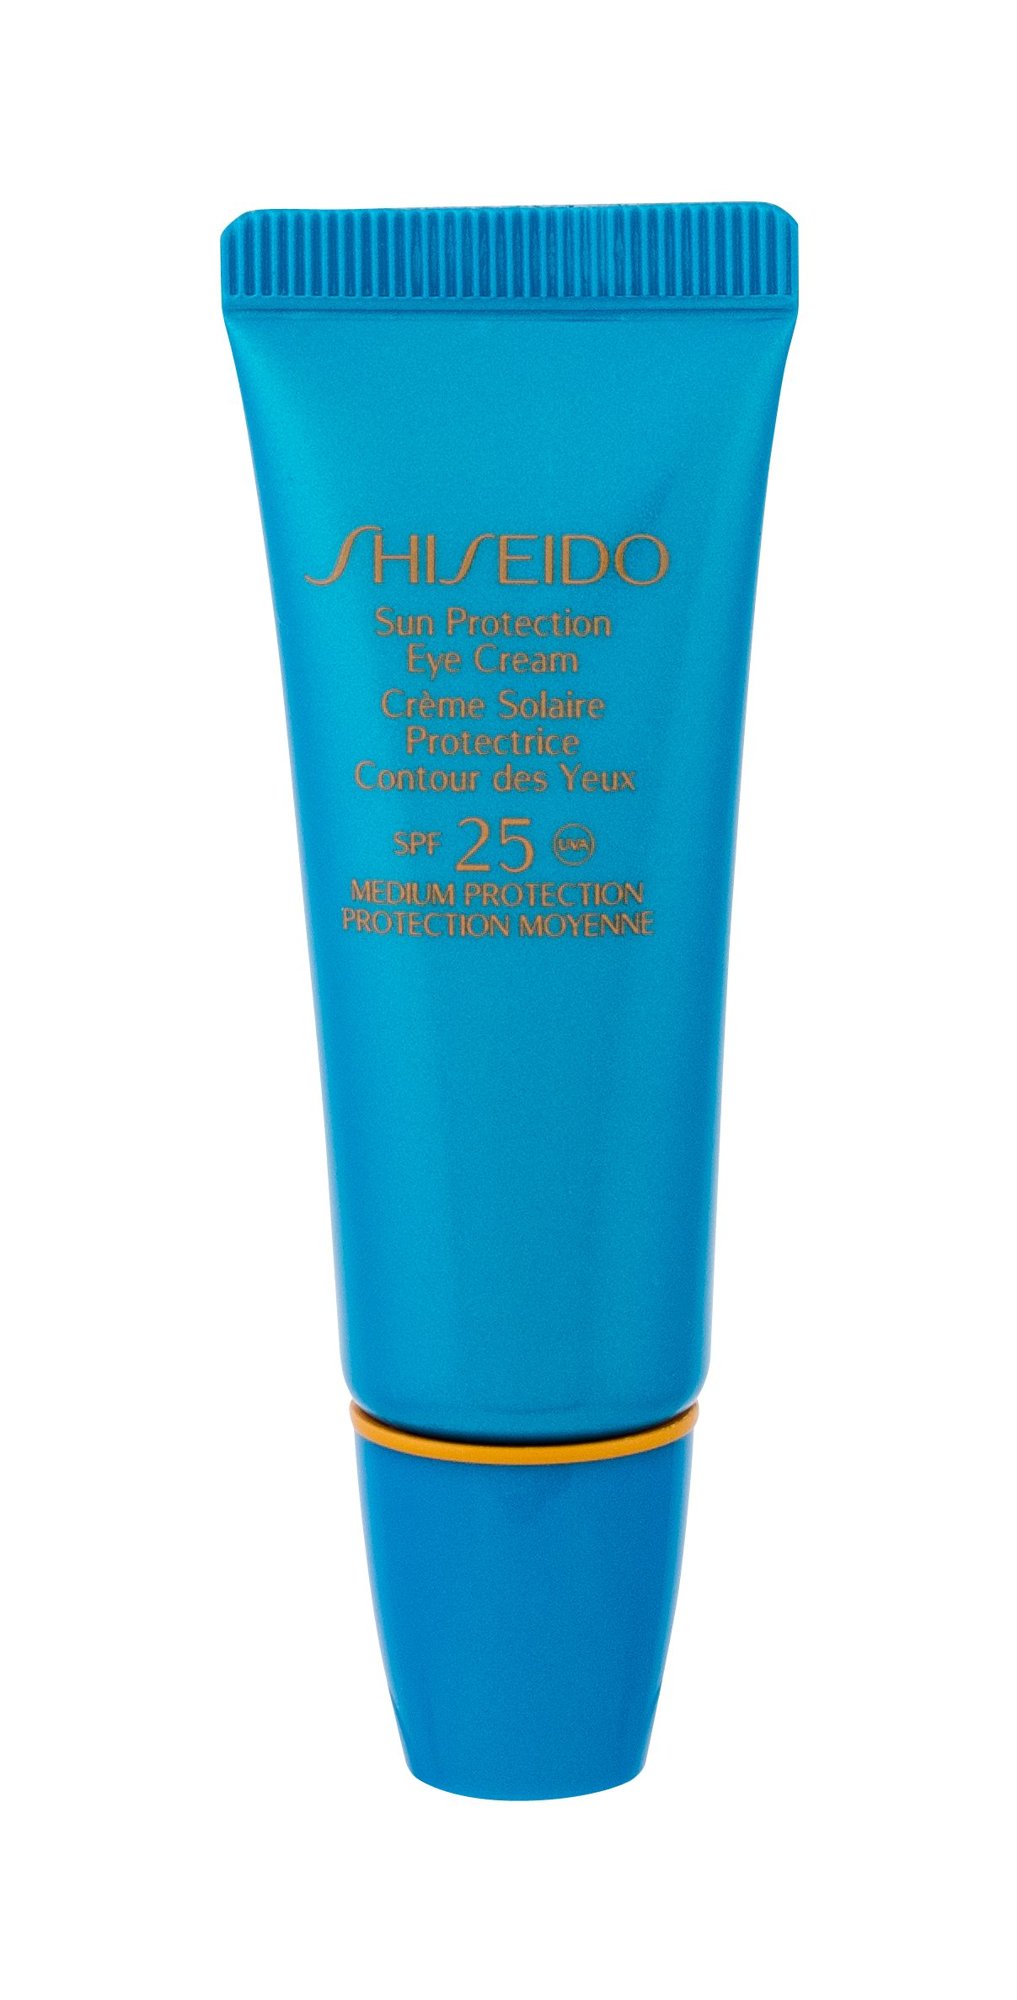 Shiseido Sun Protection Eye Cream paakių kremas